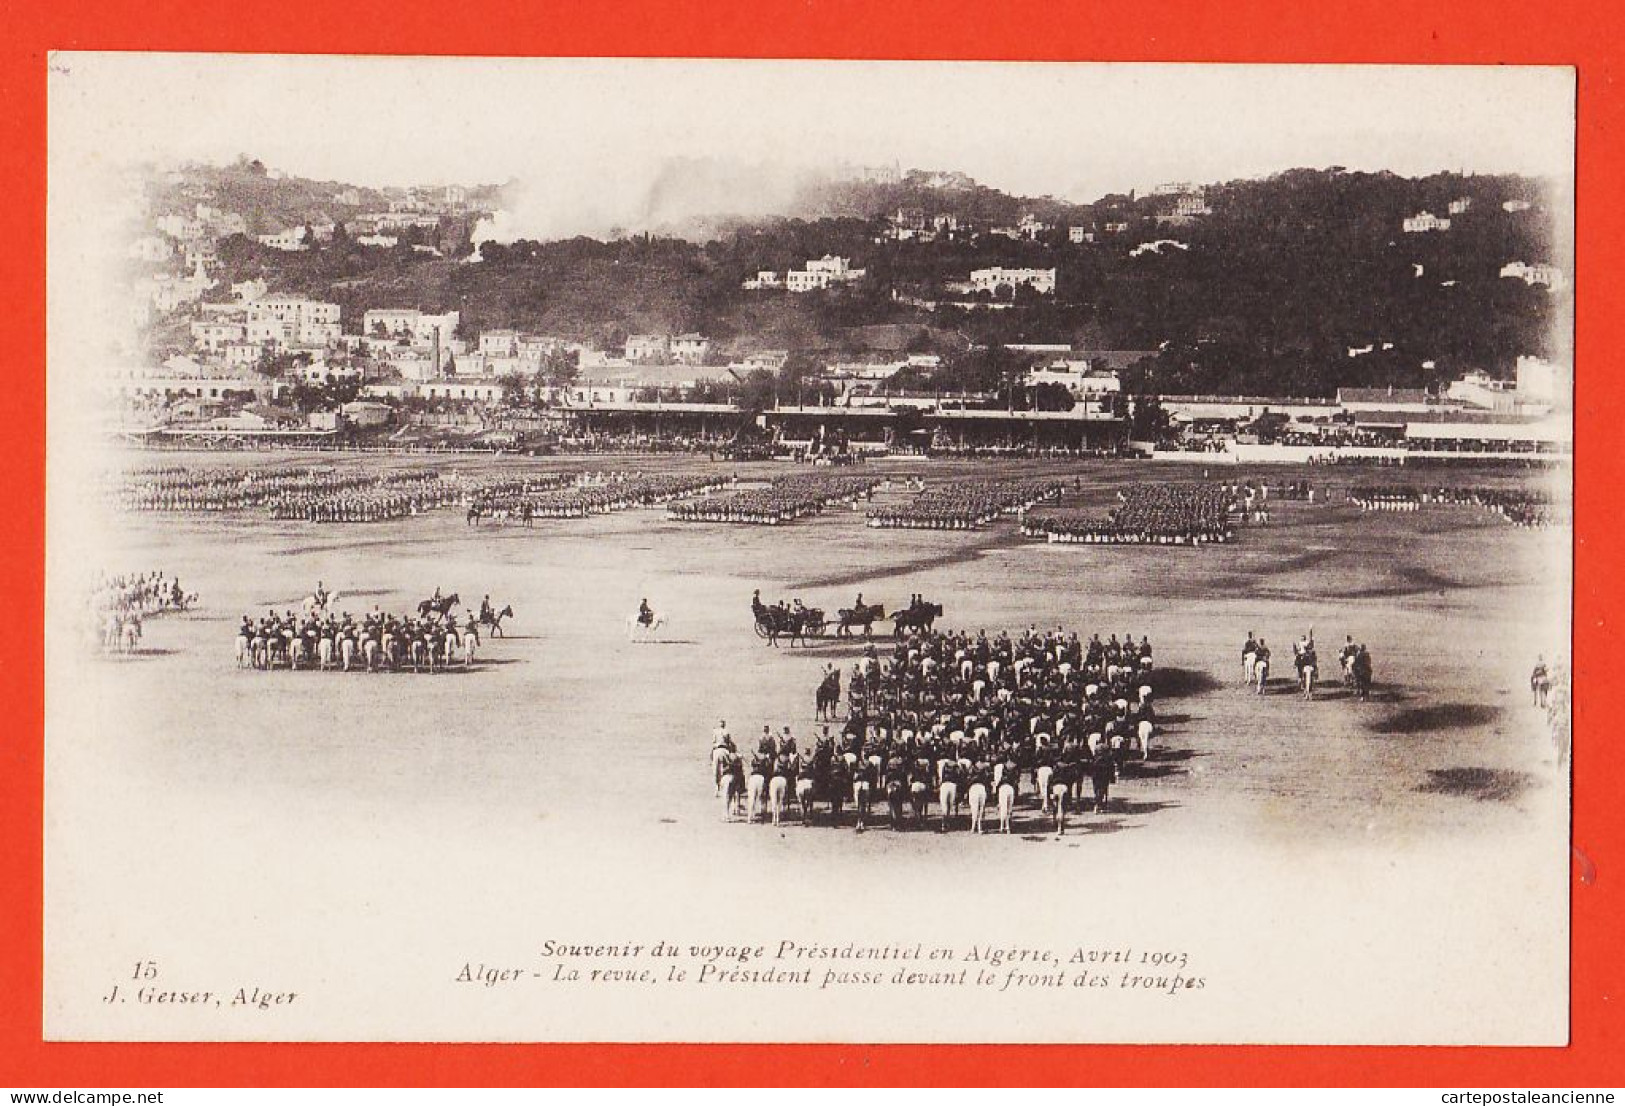 01742 / ALGER Algérie Souvenir Voyage Présidentiel LOUBET Avril 1903 Revue Président Passe Front Troupes GEISER - Alger